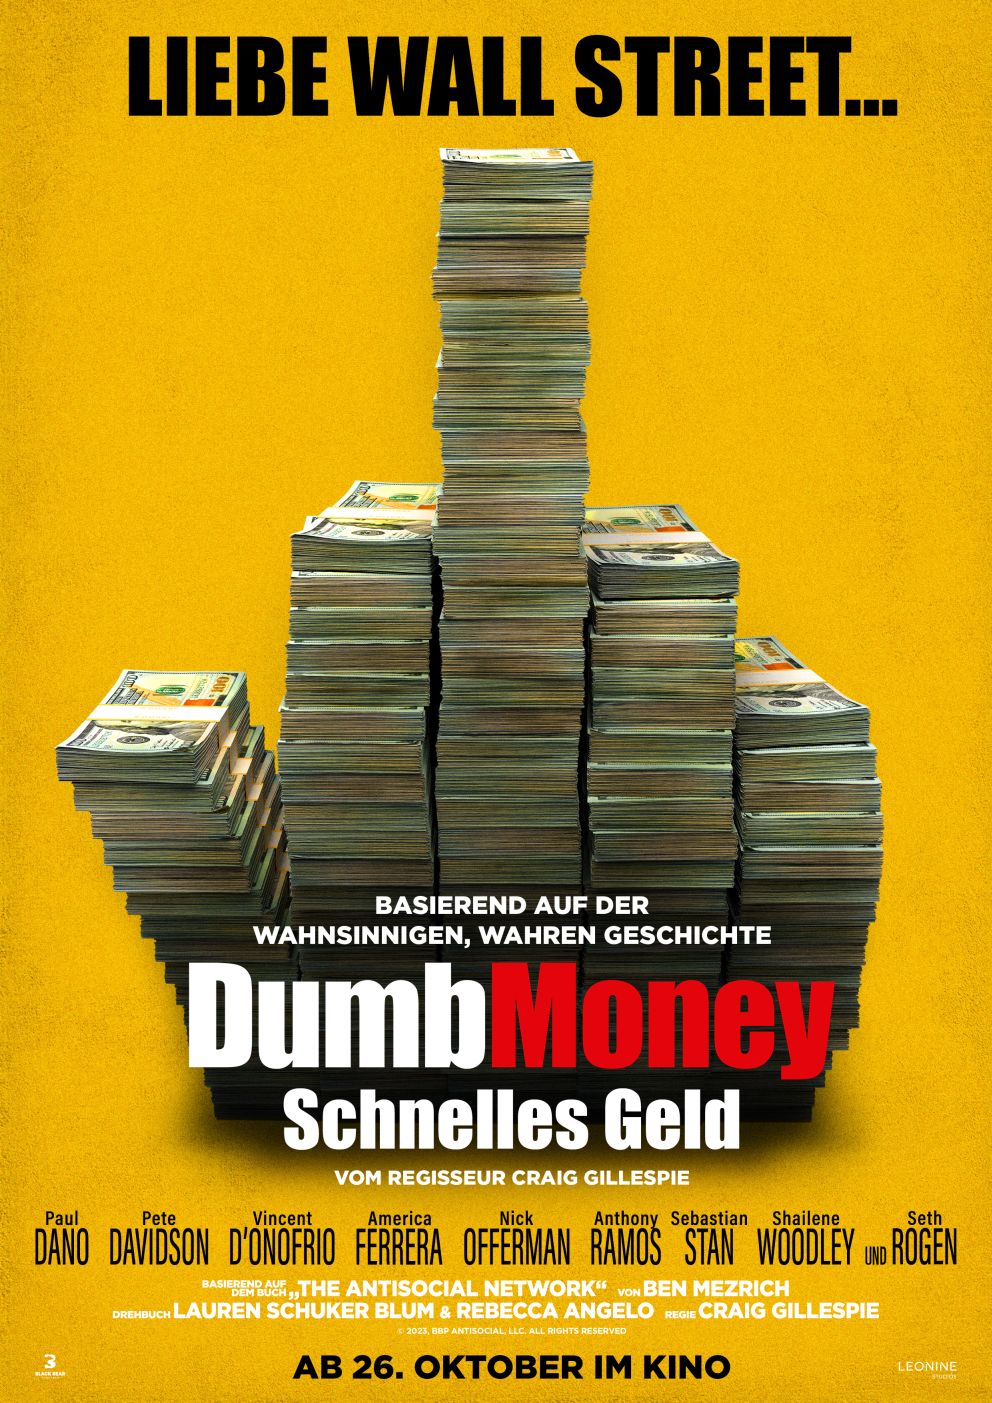 Trailer zu „DUMB MONEY – SCHNELLES GELD“: Paul Dano legt sich mit der Wall Street an